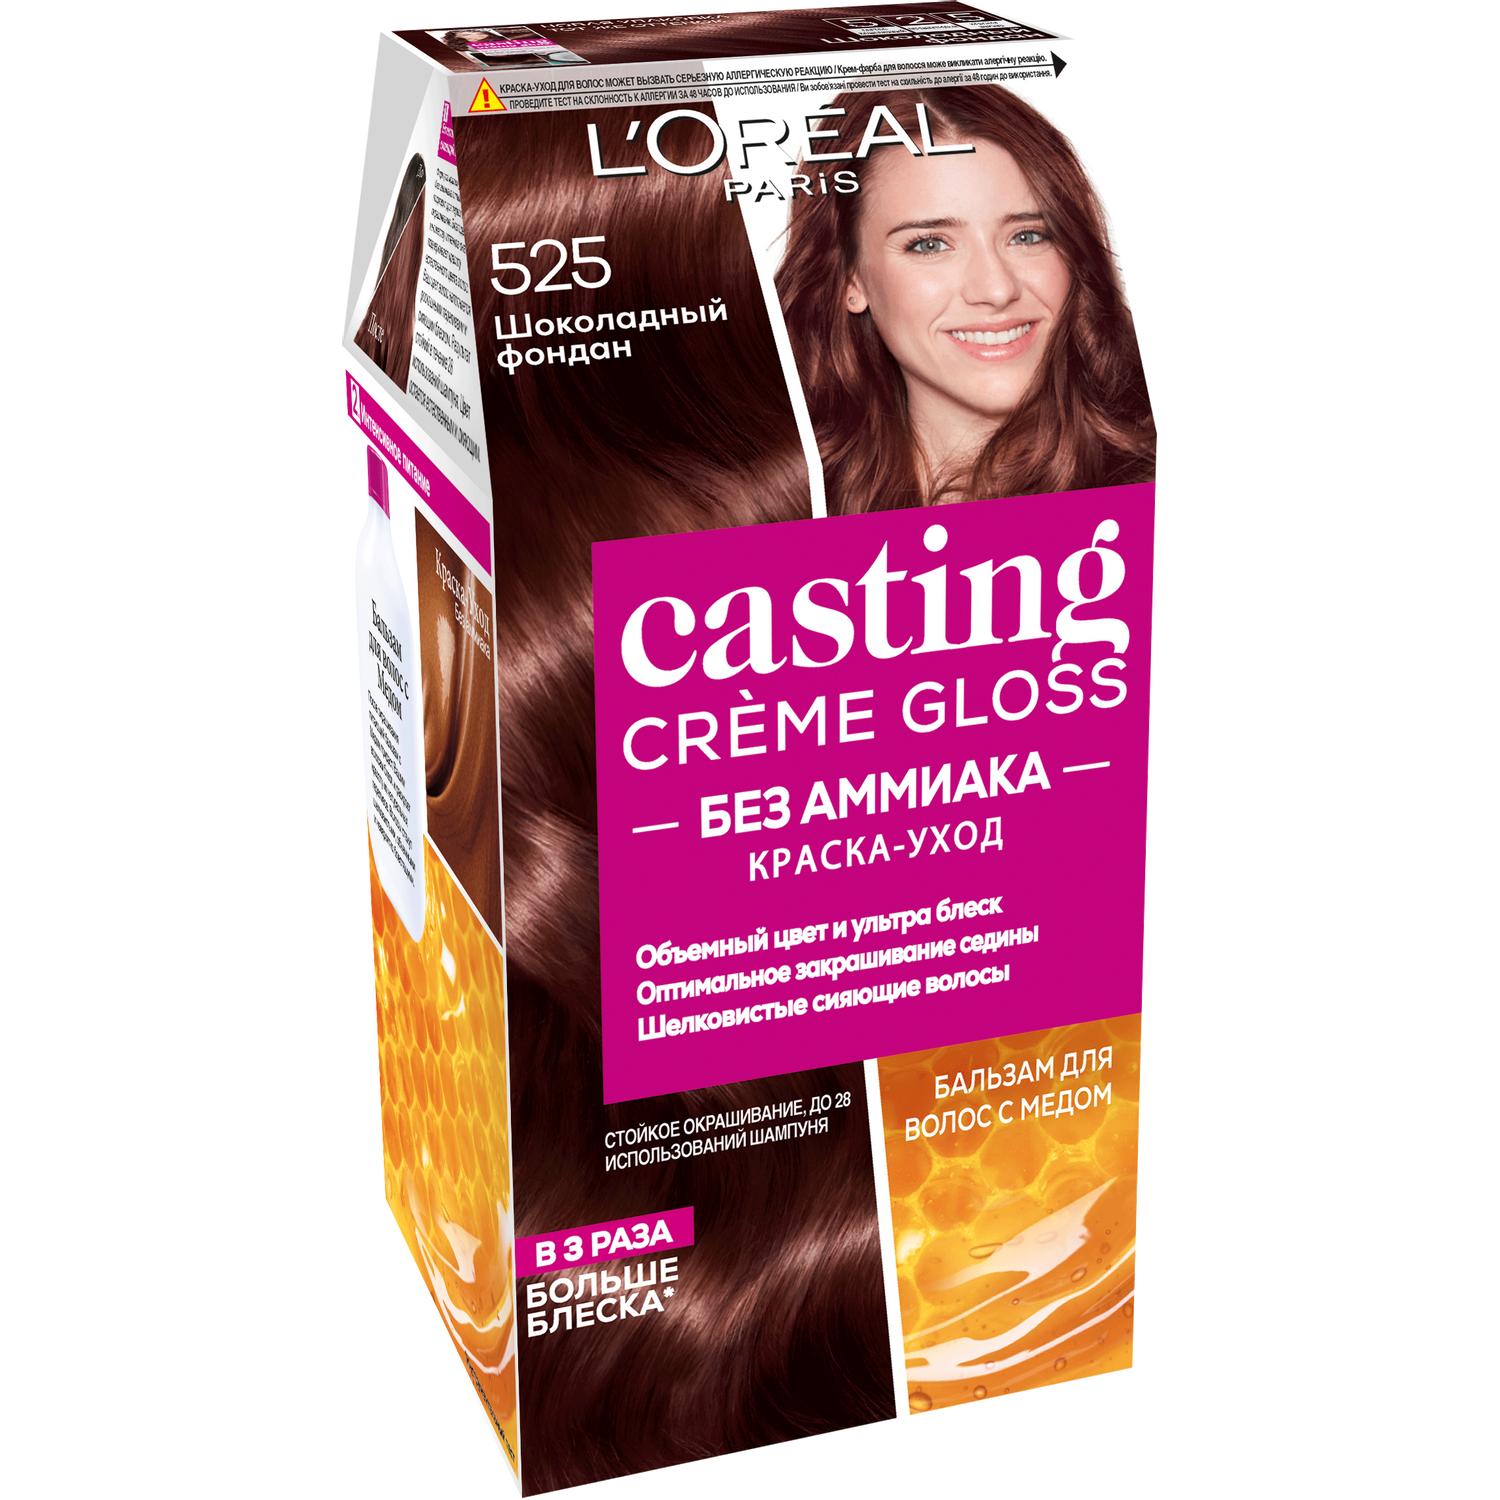 Краска для волос L'Oreal Paris Casting Creme Gloss 525 Шоколадный фондан краска для волос l oreal paris casting creme gloss 635 шоколадное пралине